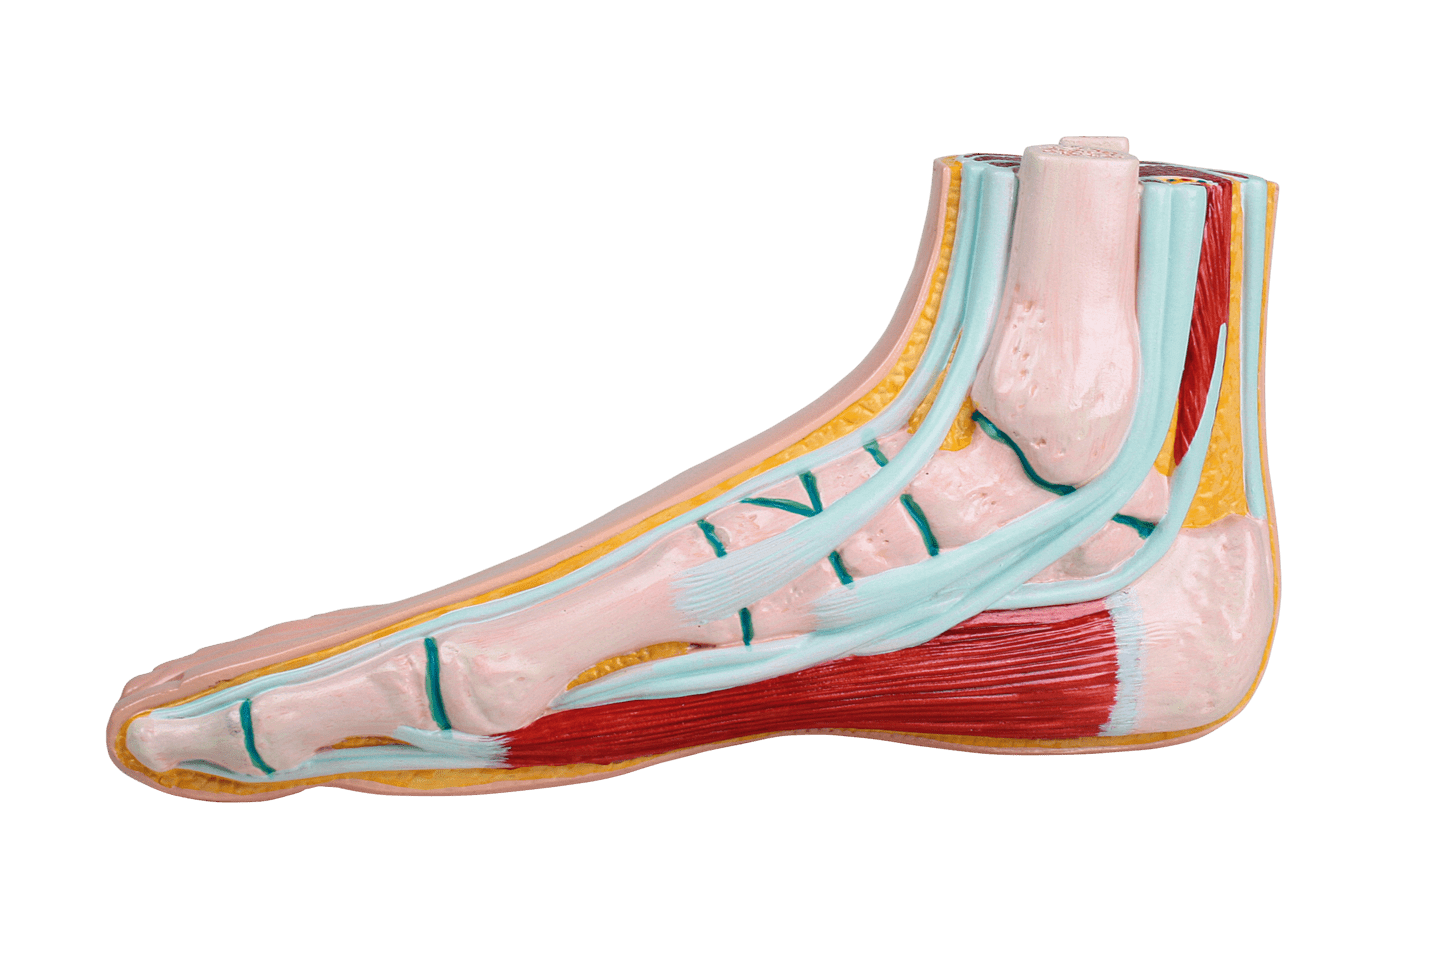 RUCK - Fußmodelle aus Kunststoff